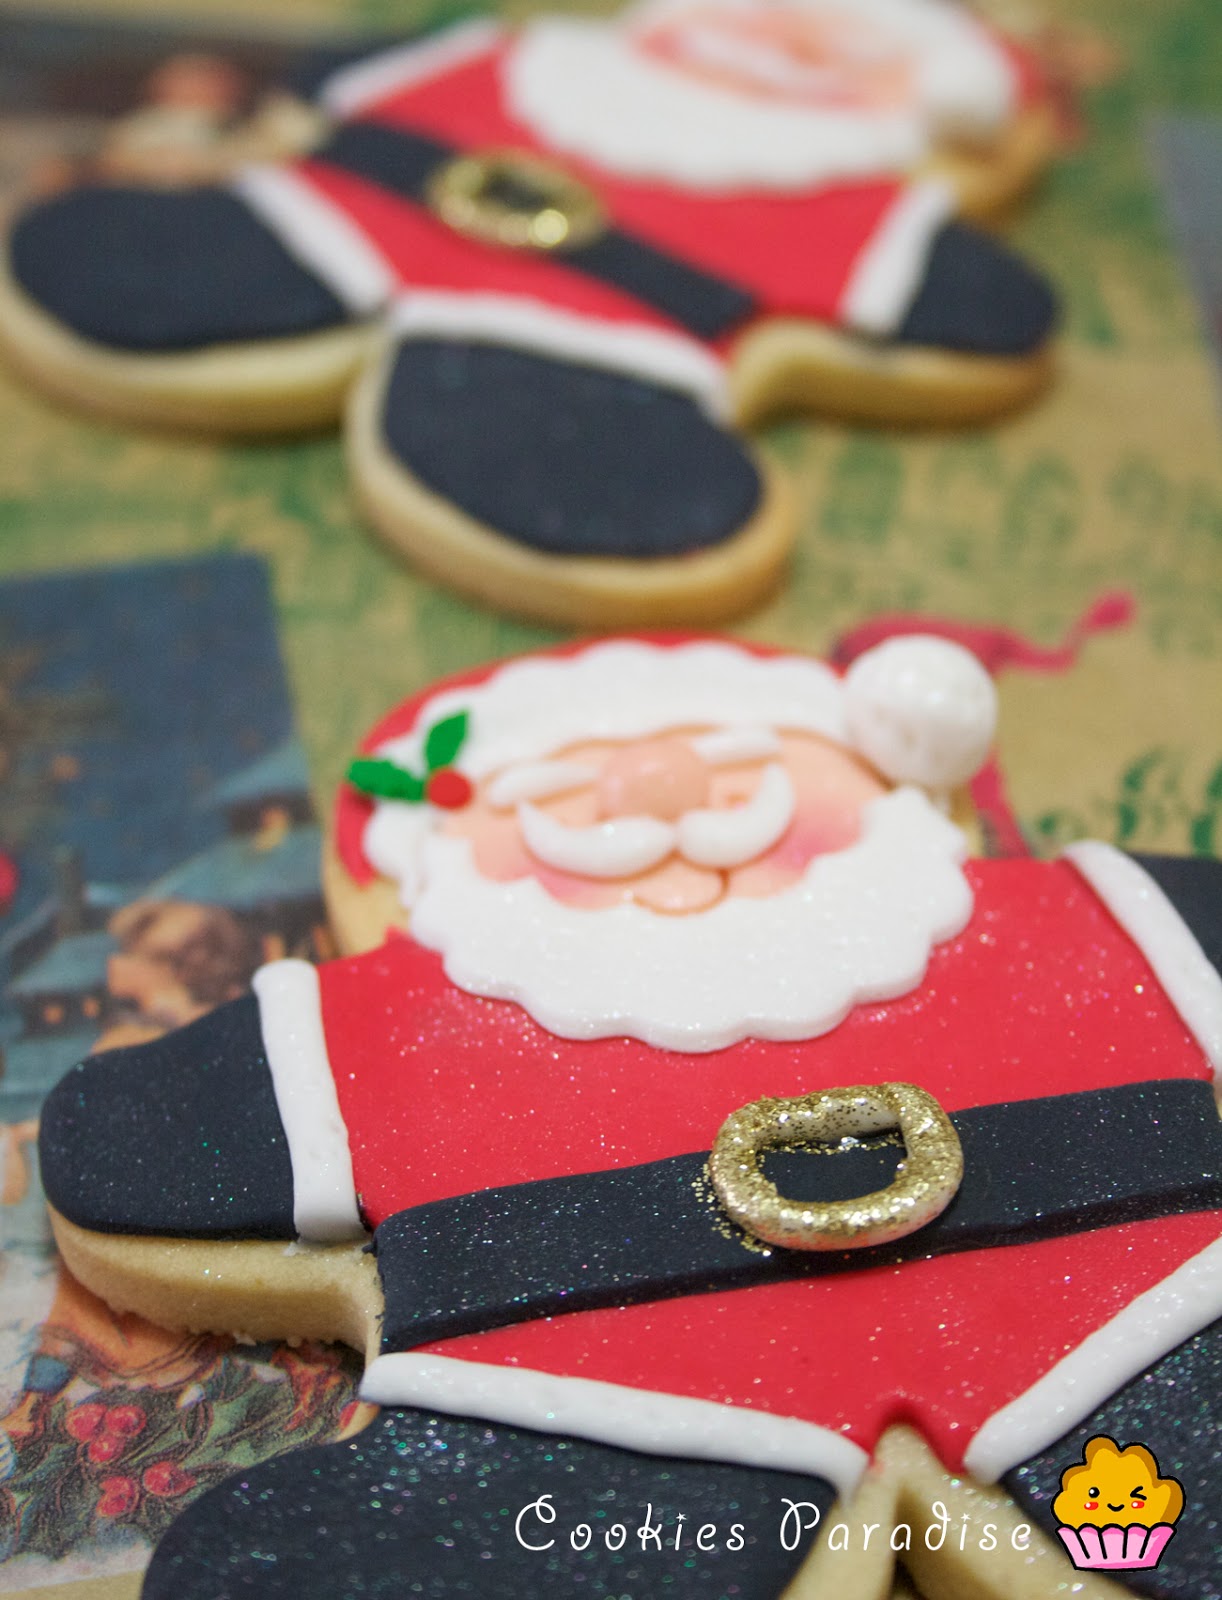 Cómo decorar GALLETAS NAVIDEÑAS  christmas cookies decorating 